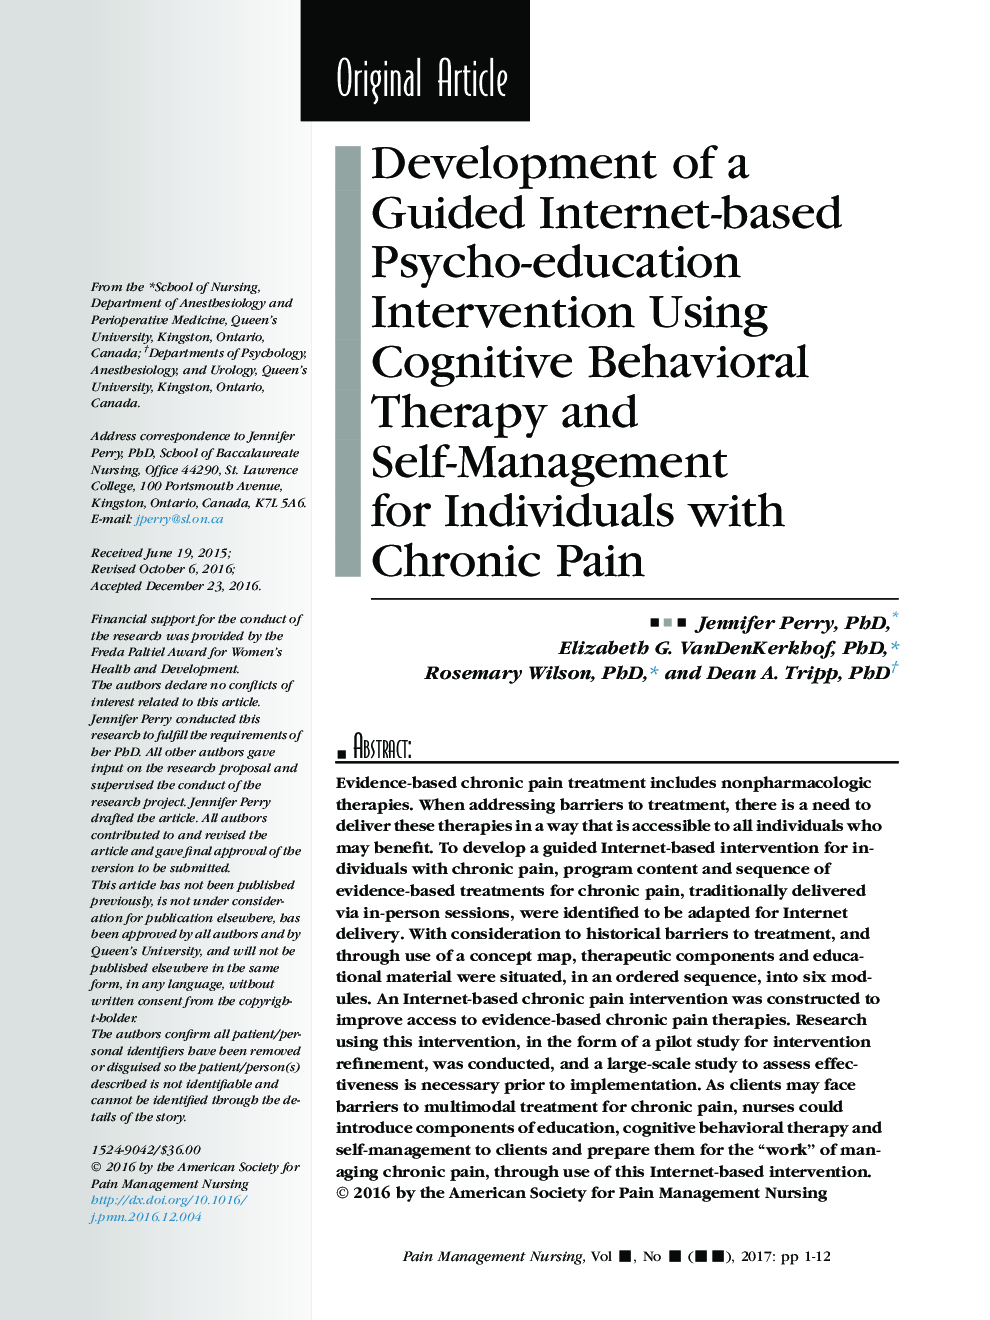 توسعه یک مداخله آموزش روانشناسی مبتنی بر اینترنت با استفاده از درمان رفتاری شناختی و خودمراقبتی برای افراد مبتلا به درد مزمن 